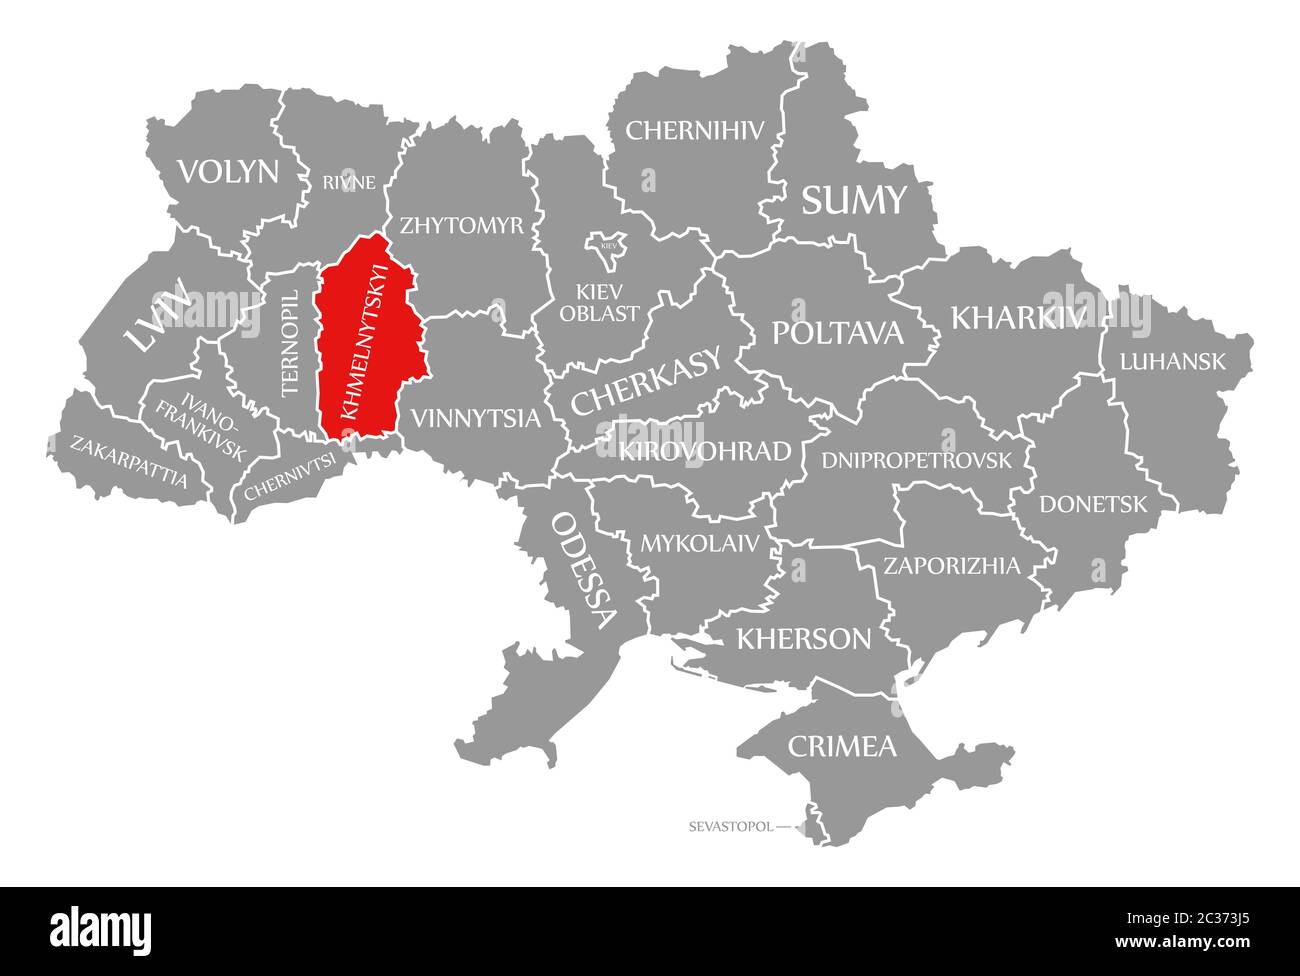 khmelnytskyi-red-highlighted-in-map-of-the-ukraine-2C373J5.jpg